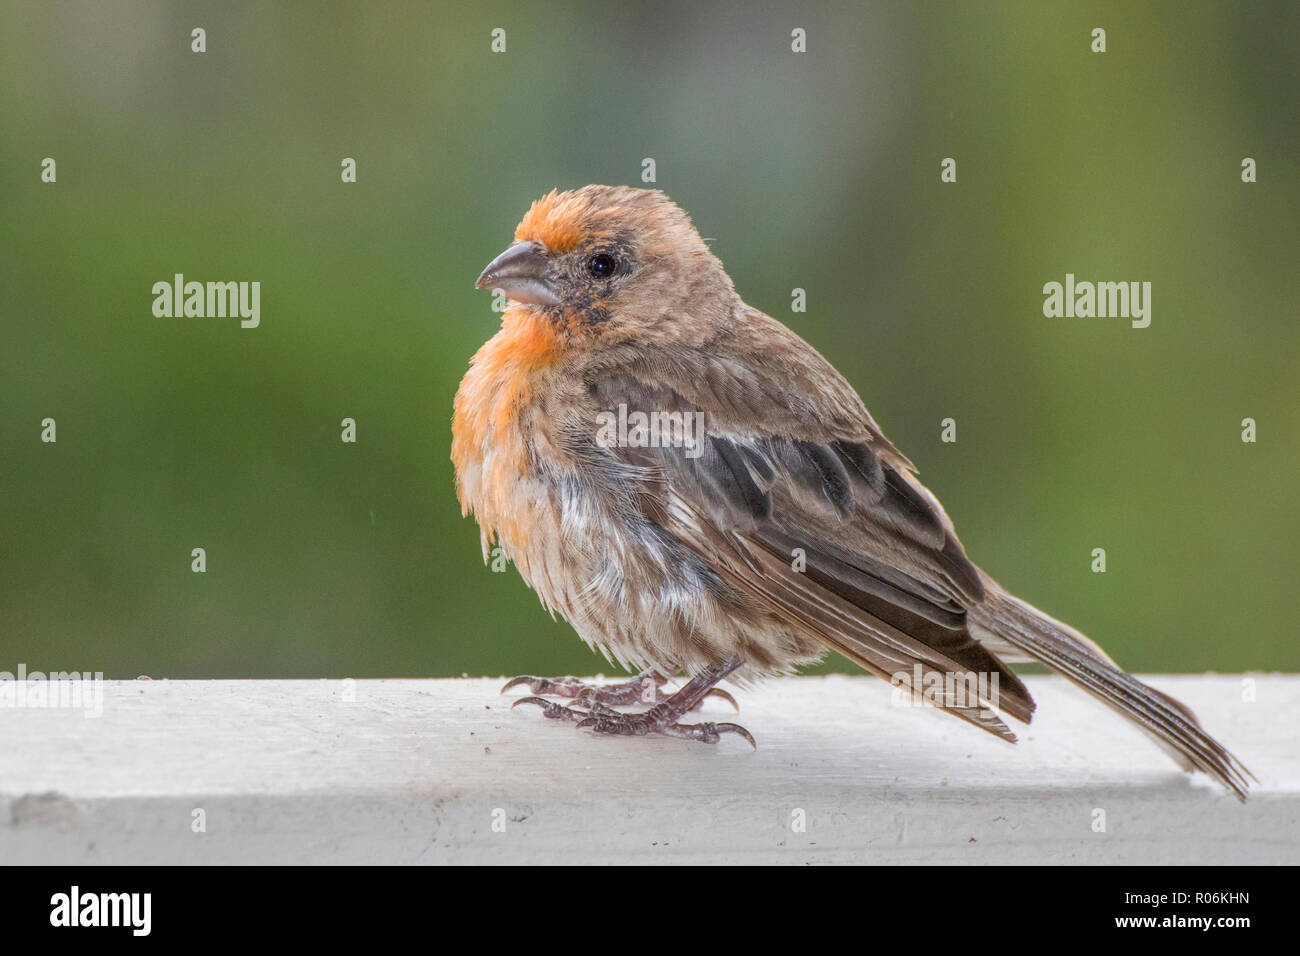 Close up House Finch Oiseau avec des plumes de la tête et de la poitrine orange Banque D'Images